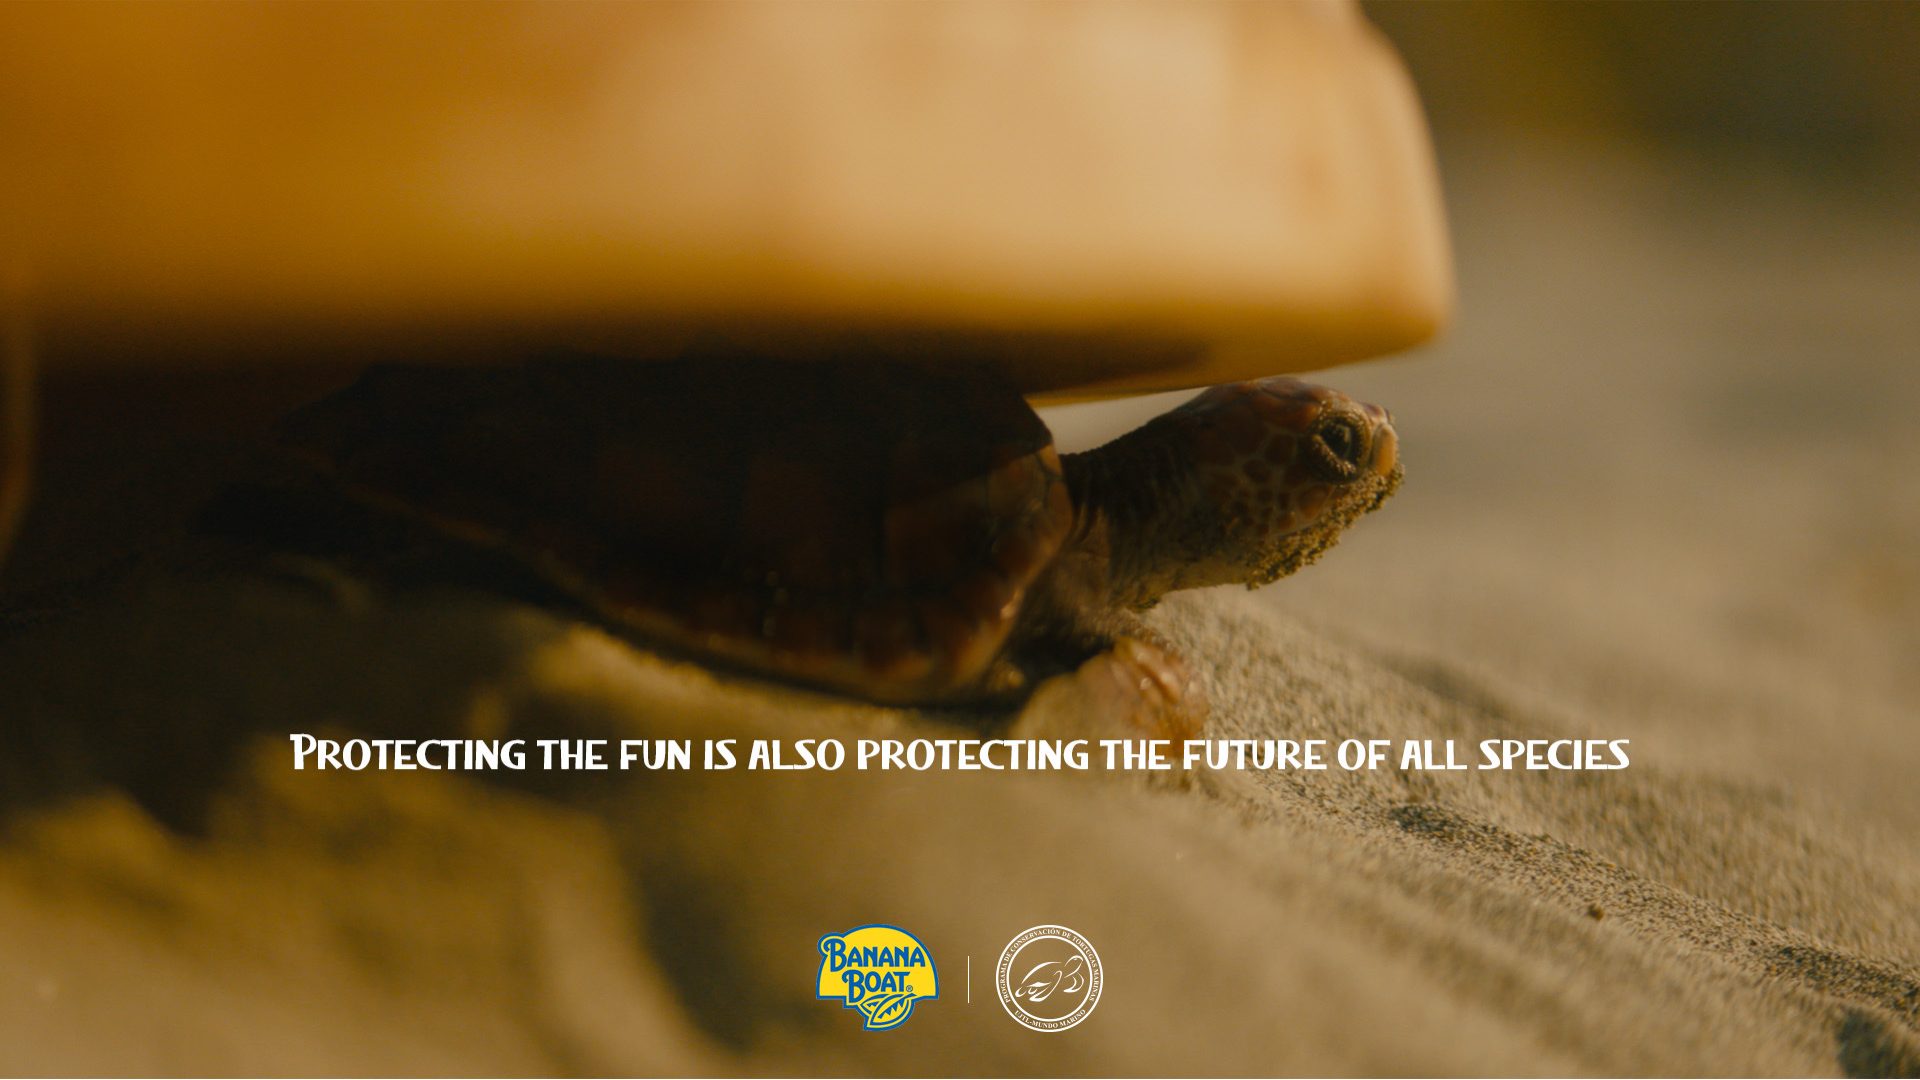 Una cría de tortuga saliendo de la cúpula de macera, en una imagen de la campaña.